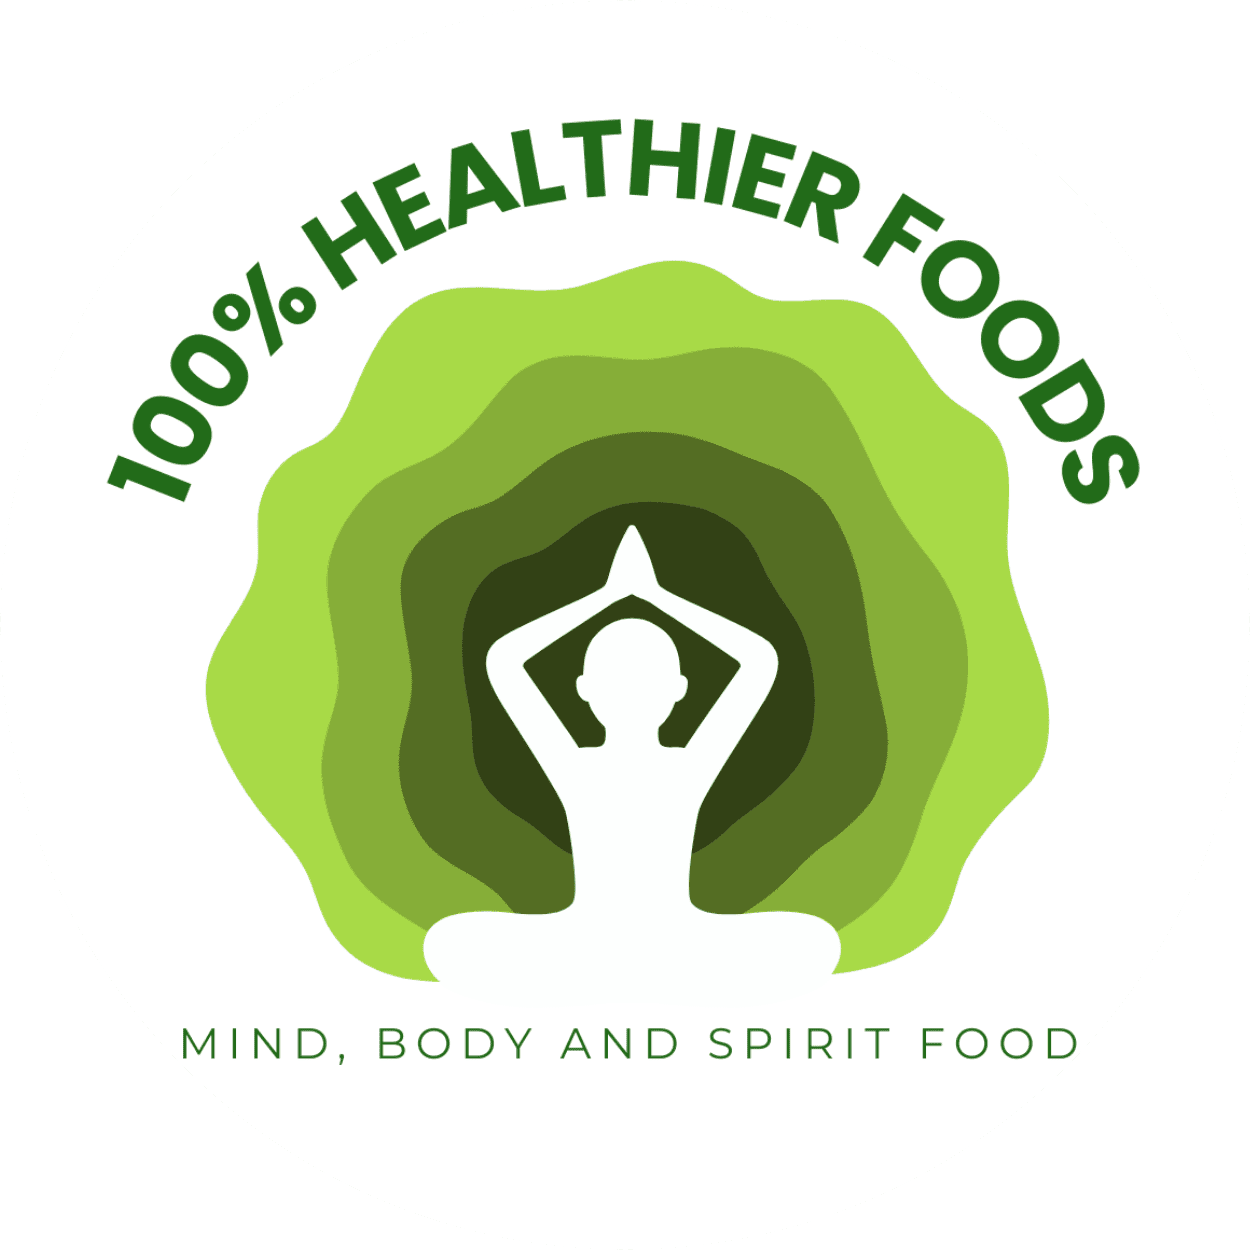 100% Healthier Foods